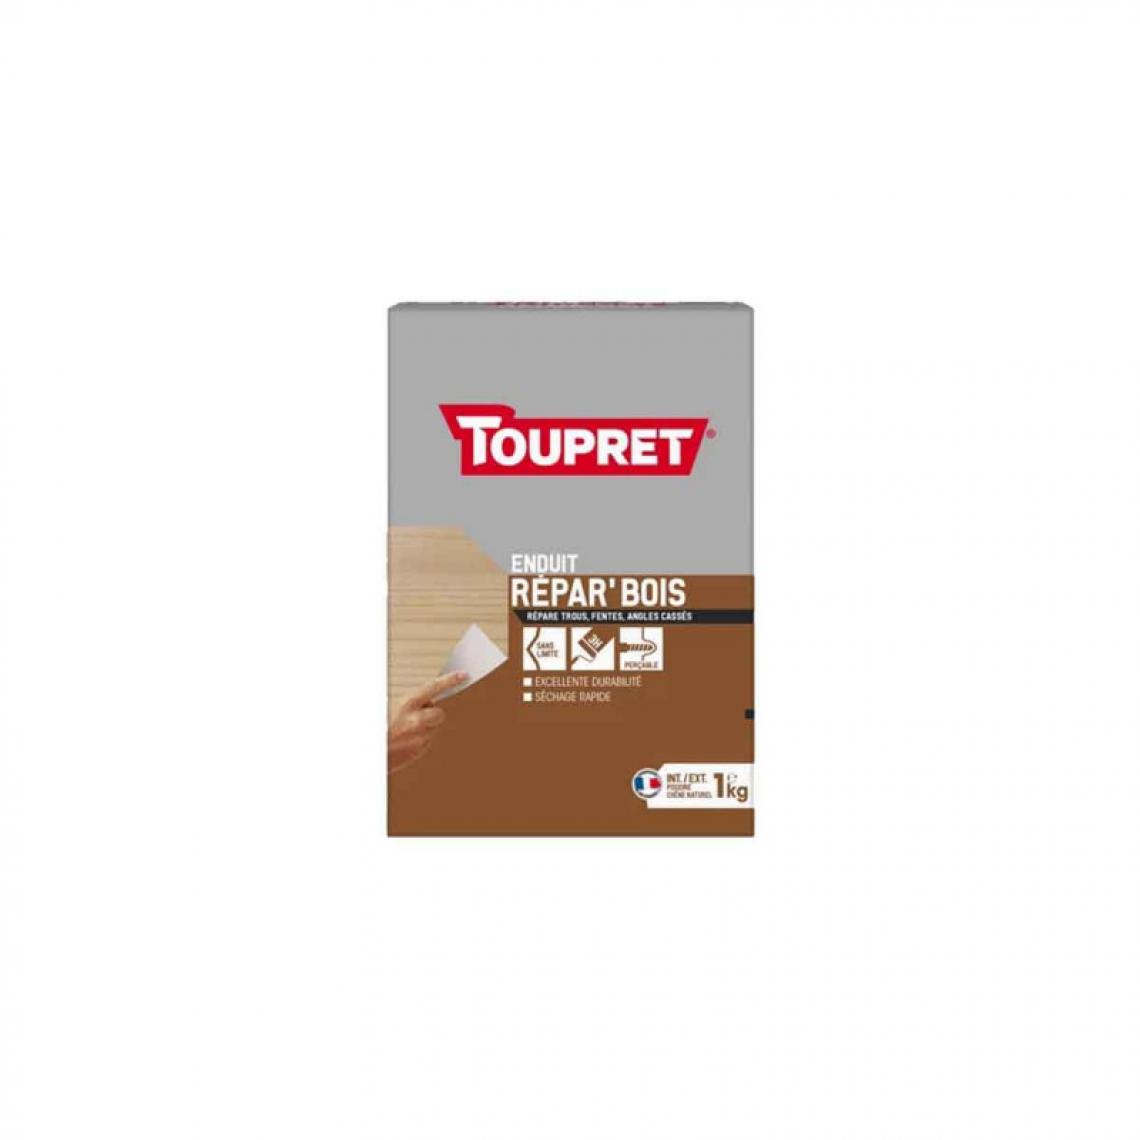 Toupret - Rebouchage bois 2 en 1 Poudre TOUPRET 1kg - BCREPBO01 - Mastic, silicone, joint